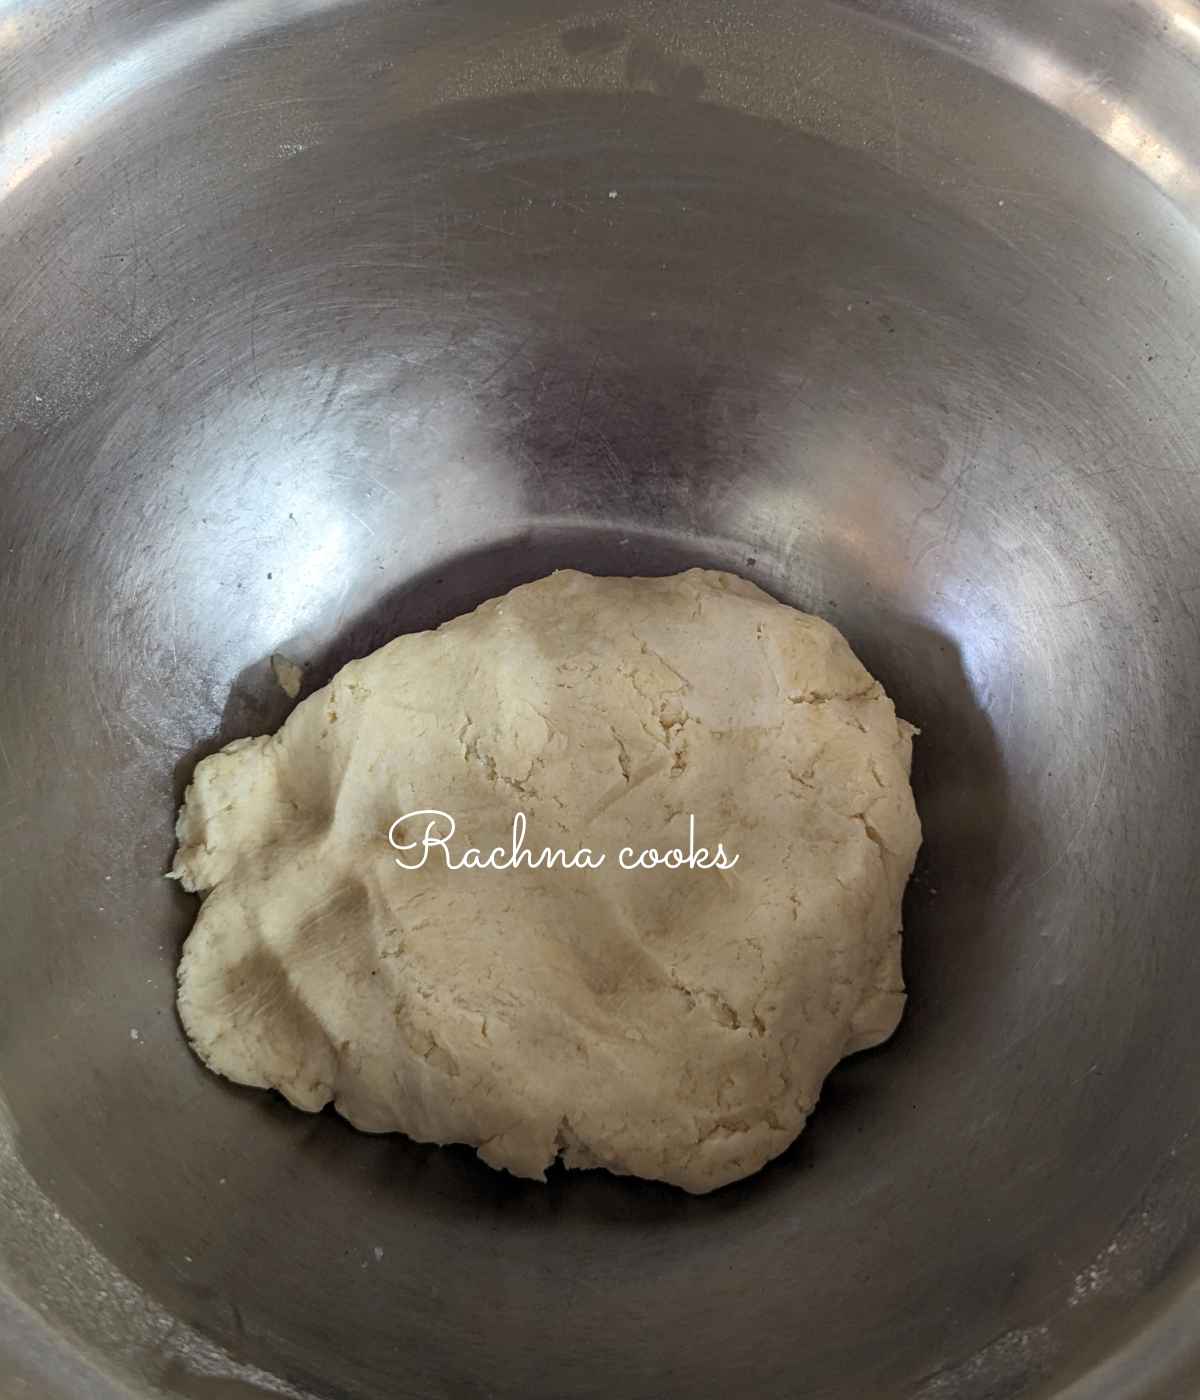 Soft dough in a bowl